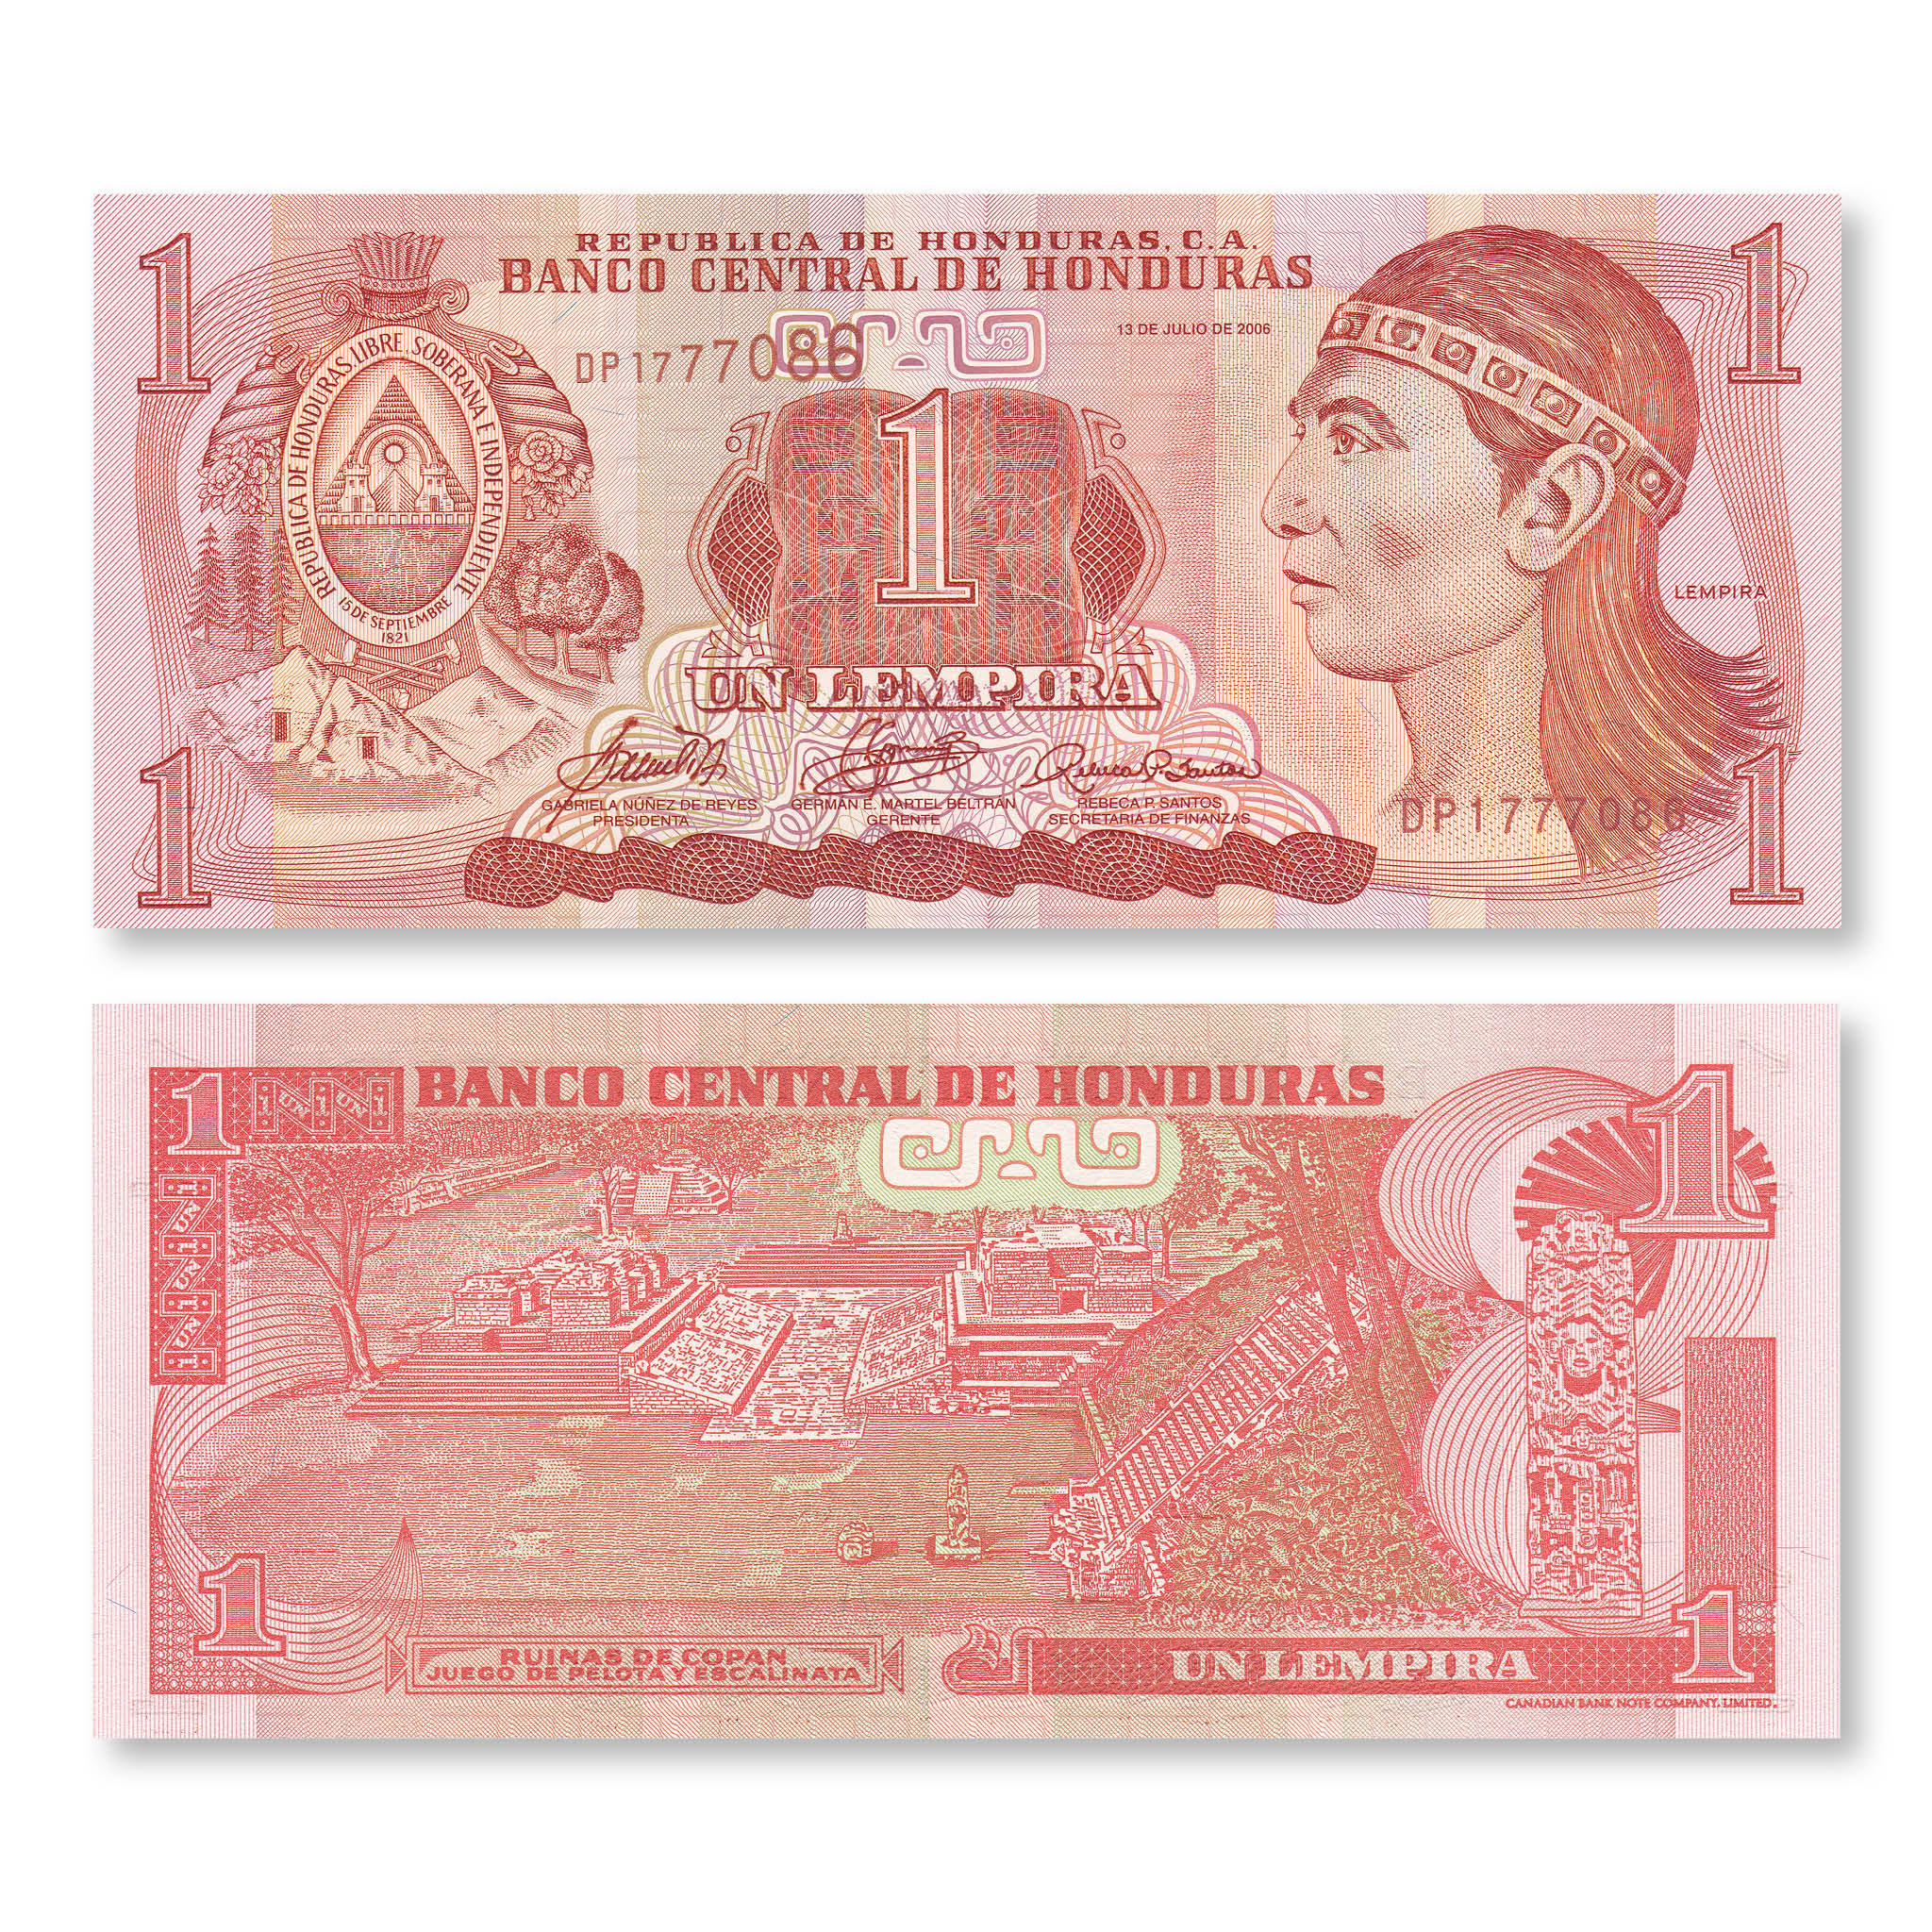 Honduras 1 Lempira, 2006, B324e, P84e, UNC - Robert's World Money - World Banknotes